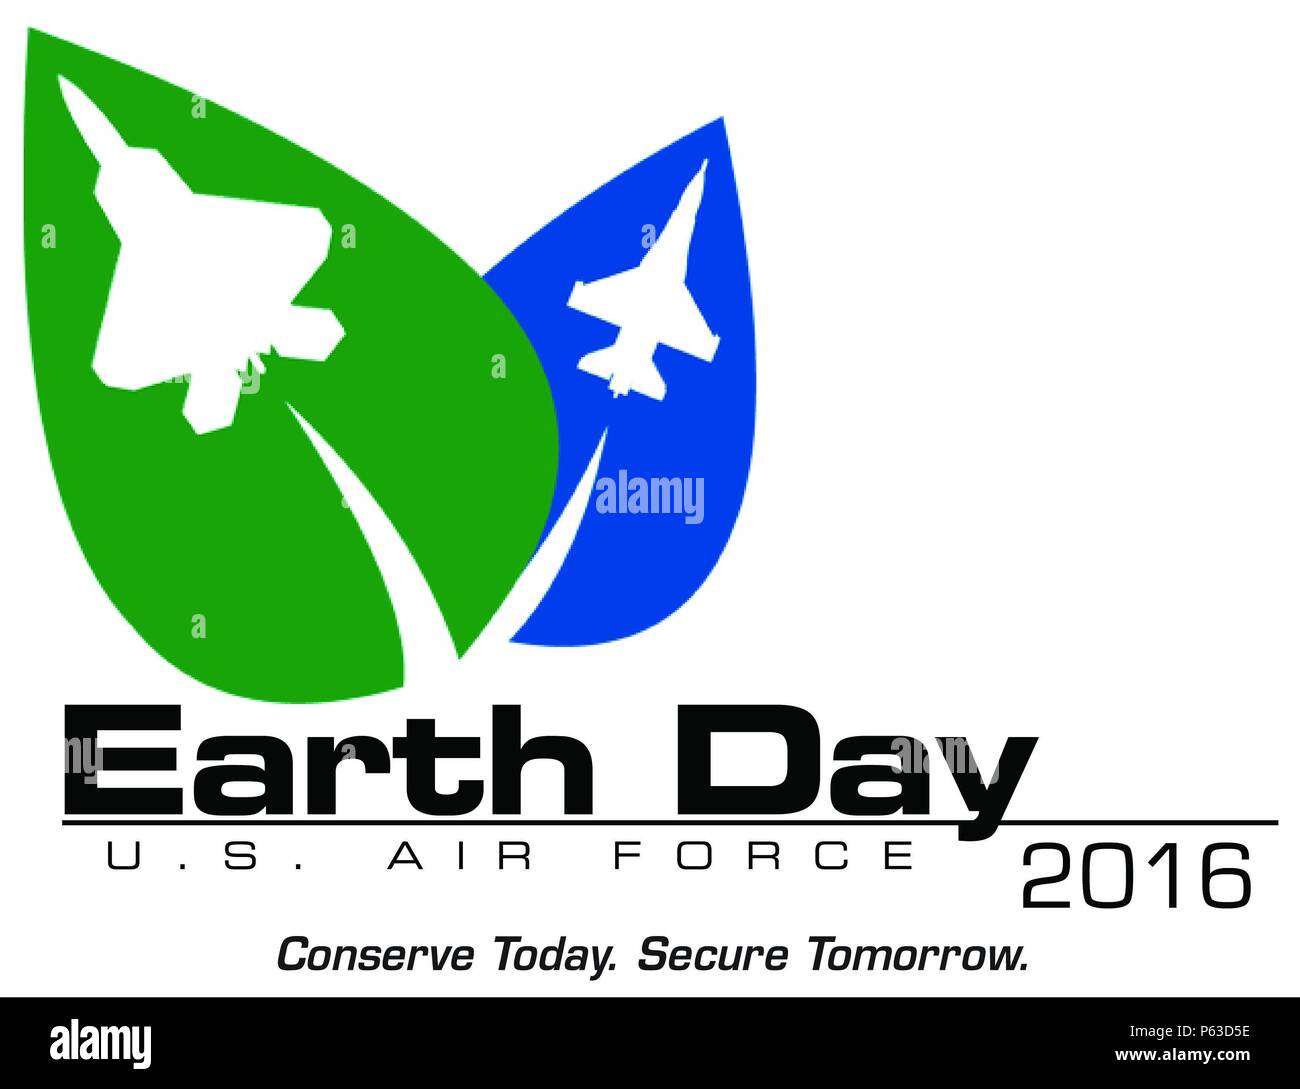 ASIA SUD-OVEST -- Air Force si impegna ogni giorno a volare, combattere e vincere, mentre anche la focalizzazione su ambiente iniziative in uno sforzo per ridurre i costi attraverso il riciclaggio e progetti di energia rinnovabile. Mentre non è sempre una priorità assoluta per alcuni aviatori, questi ambientalmente consapevole sforzi sono portato alla ribalta ogni anno il 22 aprile come il mondo celebra la Giornata della Terra. (Grafico di cortesia U.S. Air Force) Foto Stock